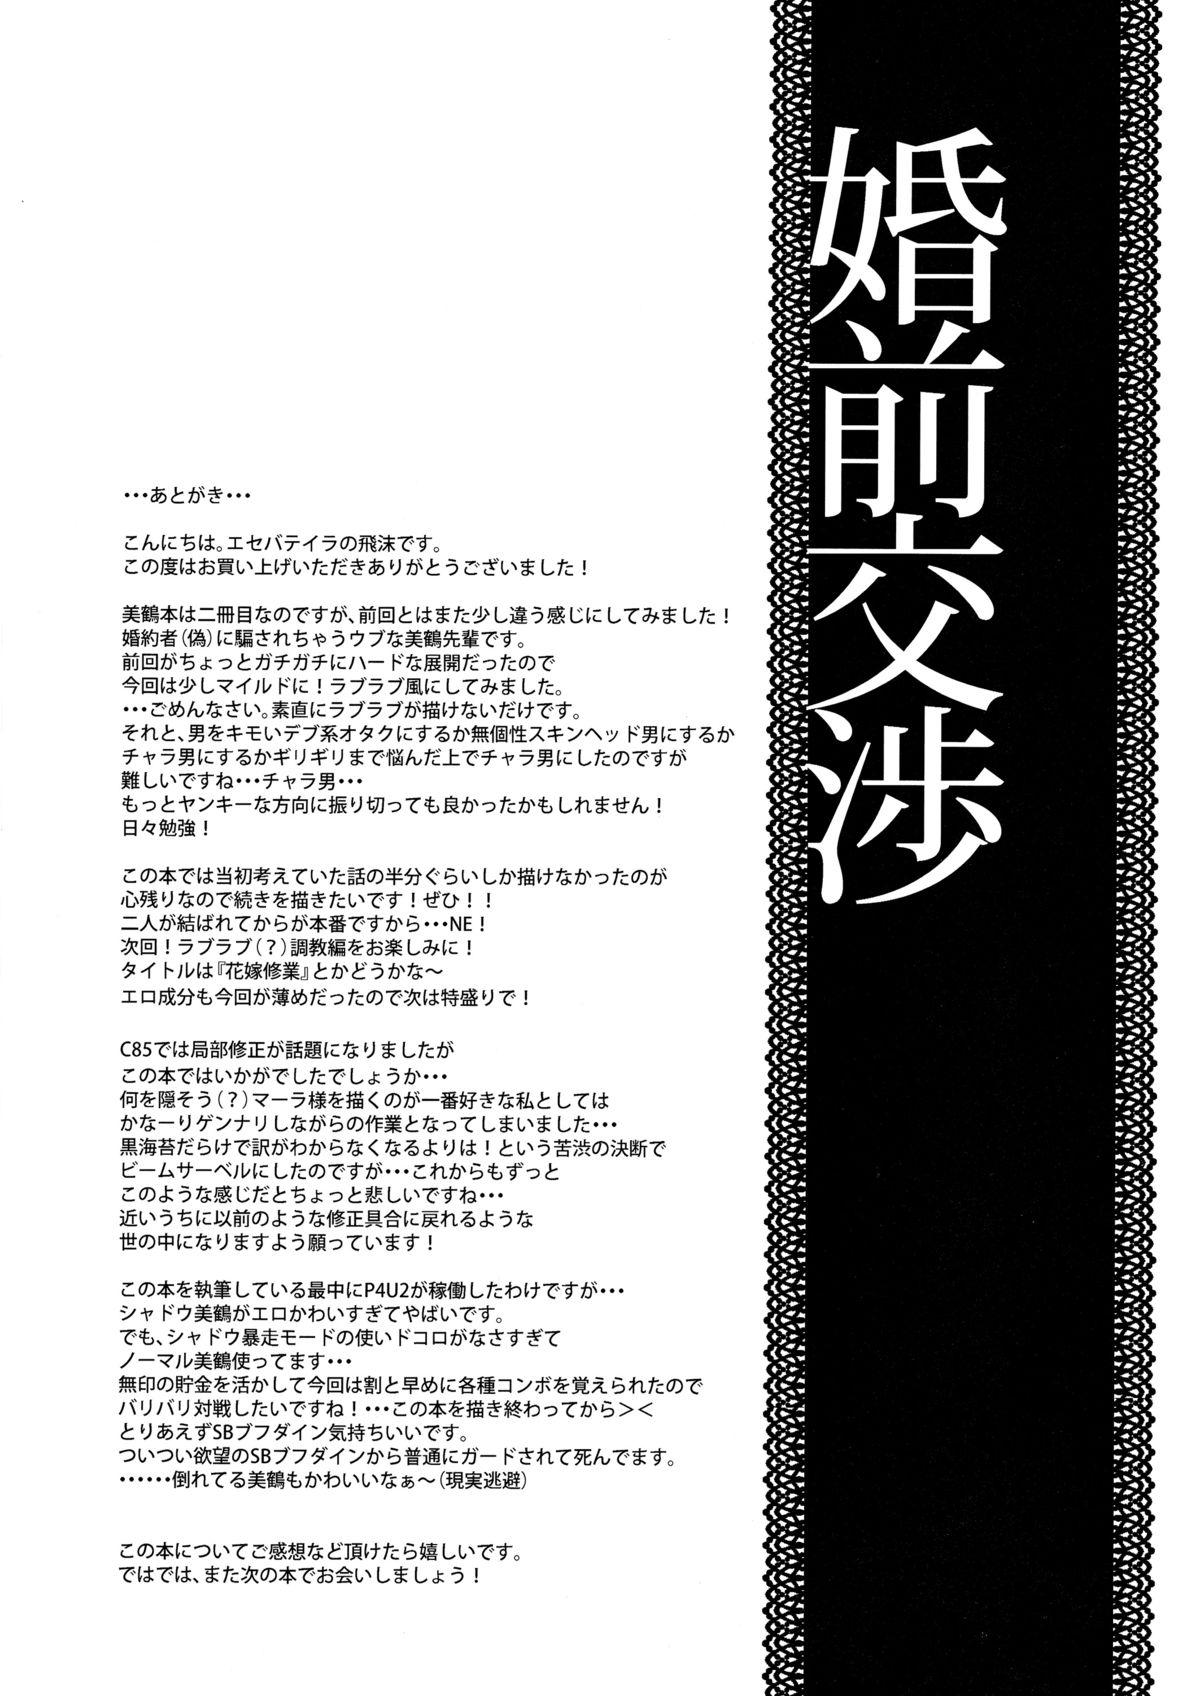 Peituda Konzen Koushou - Persona 3 Wife - Page 24